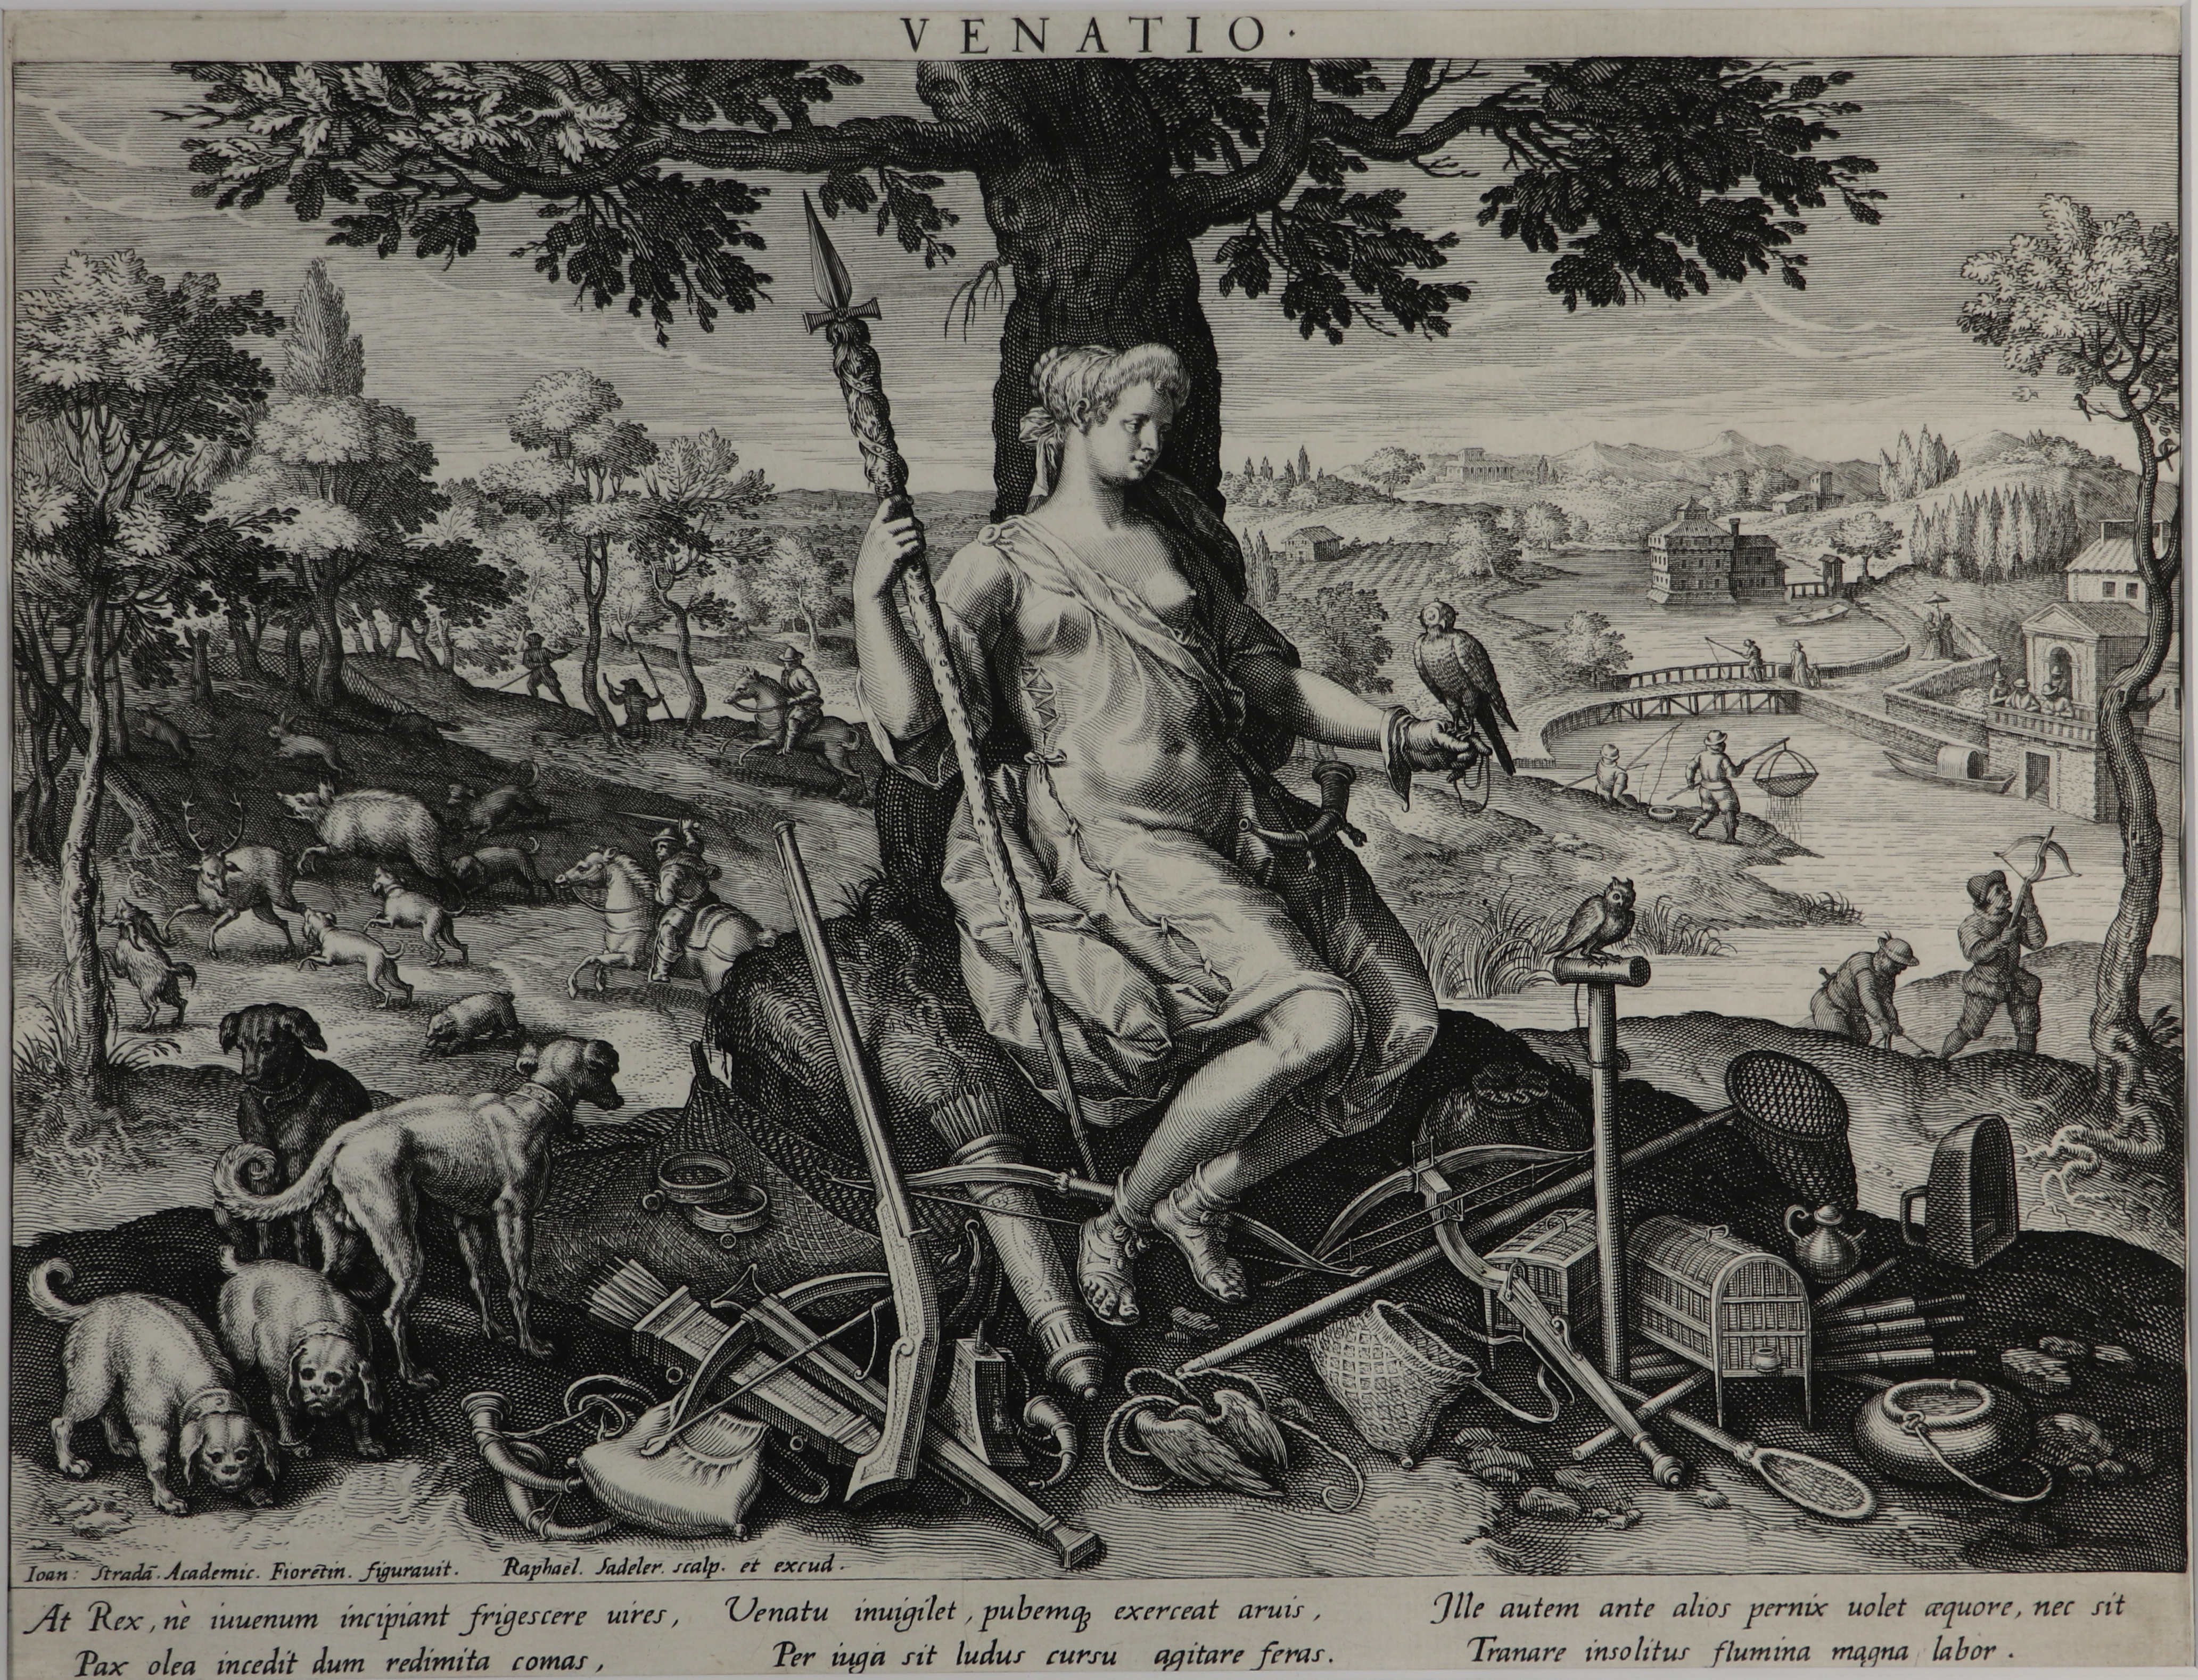 Johannes Stradanus (1523-1605)/Raphael Sadeler I. (1560-1632), Venatio, 1597 (Städtisches Museum Schloss Rheydt CC BY)